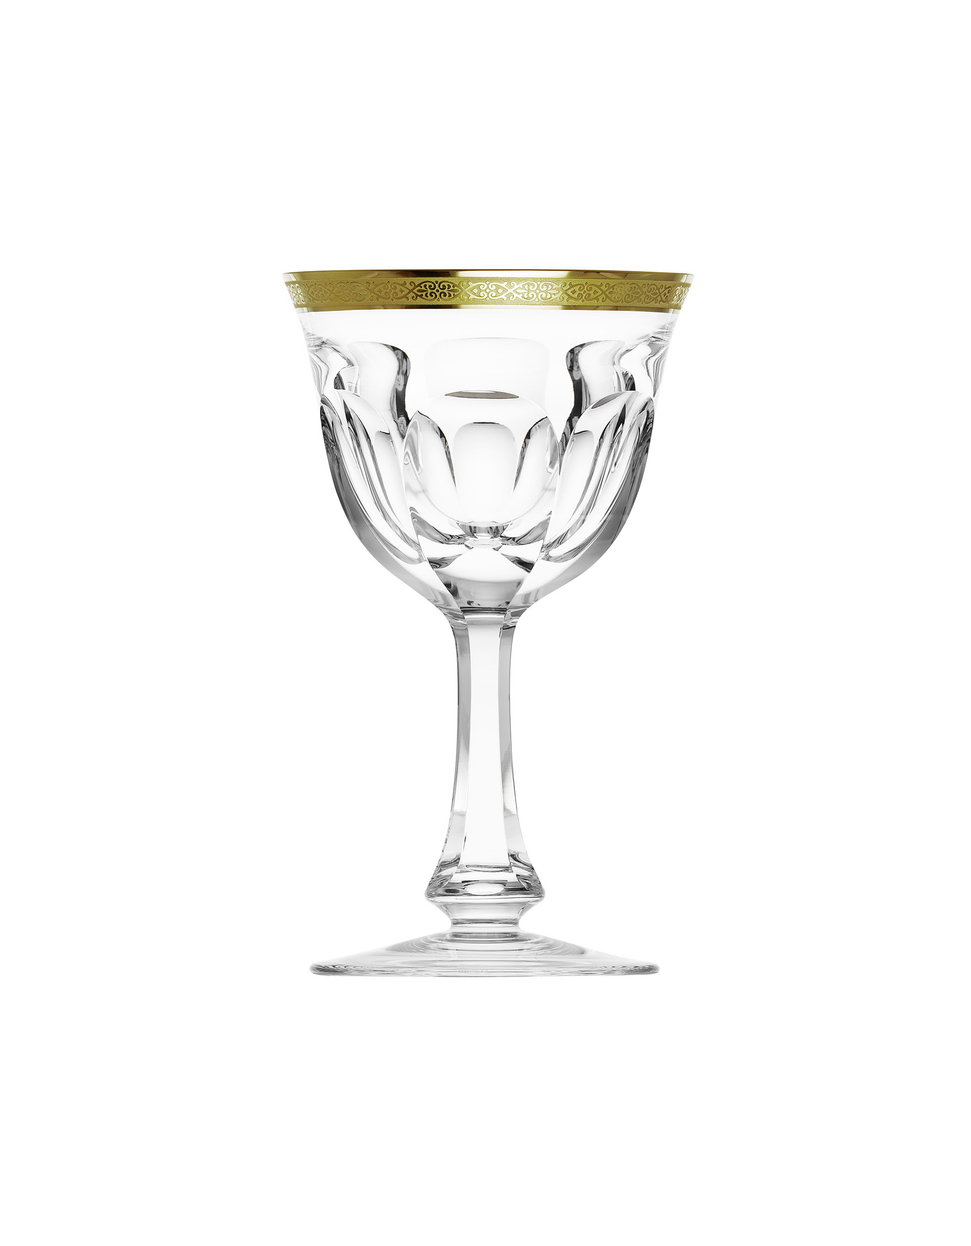 Lady Hamilton wine glass, 310 ml